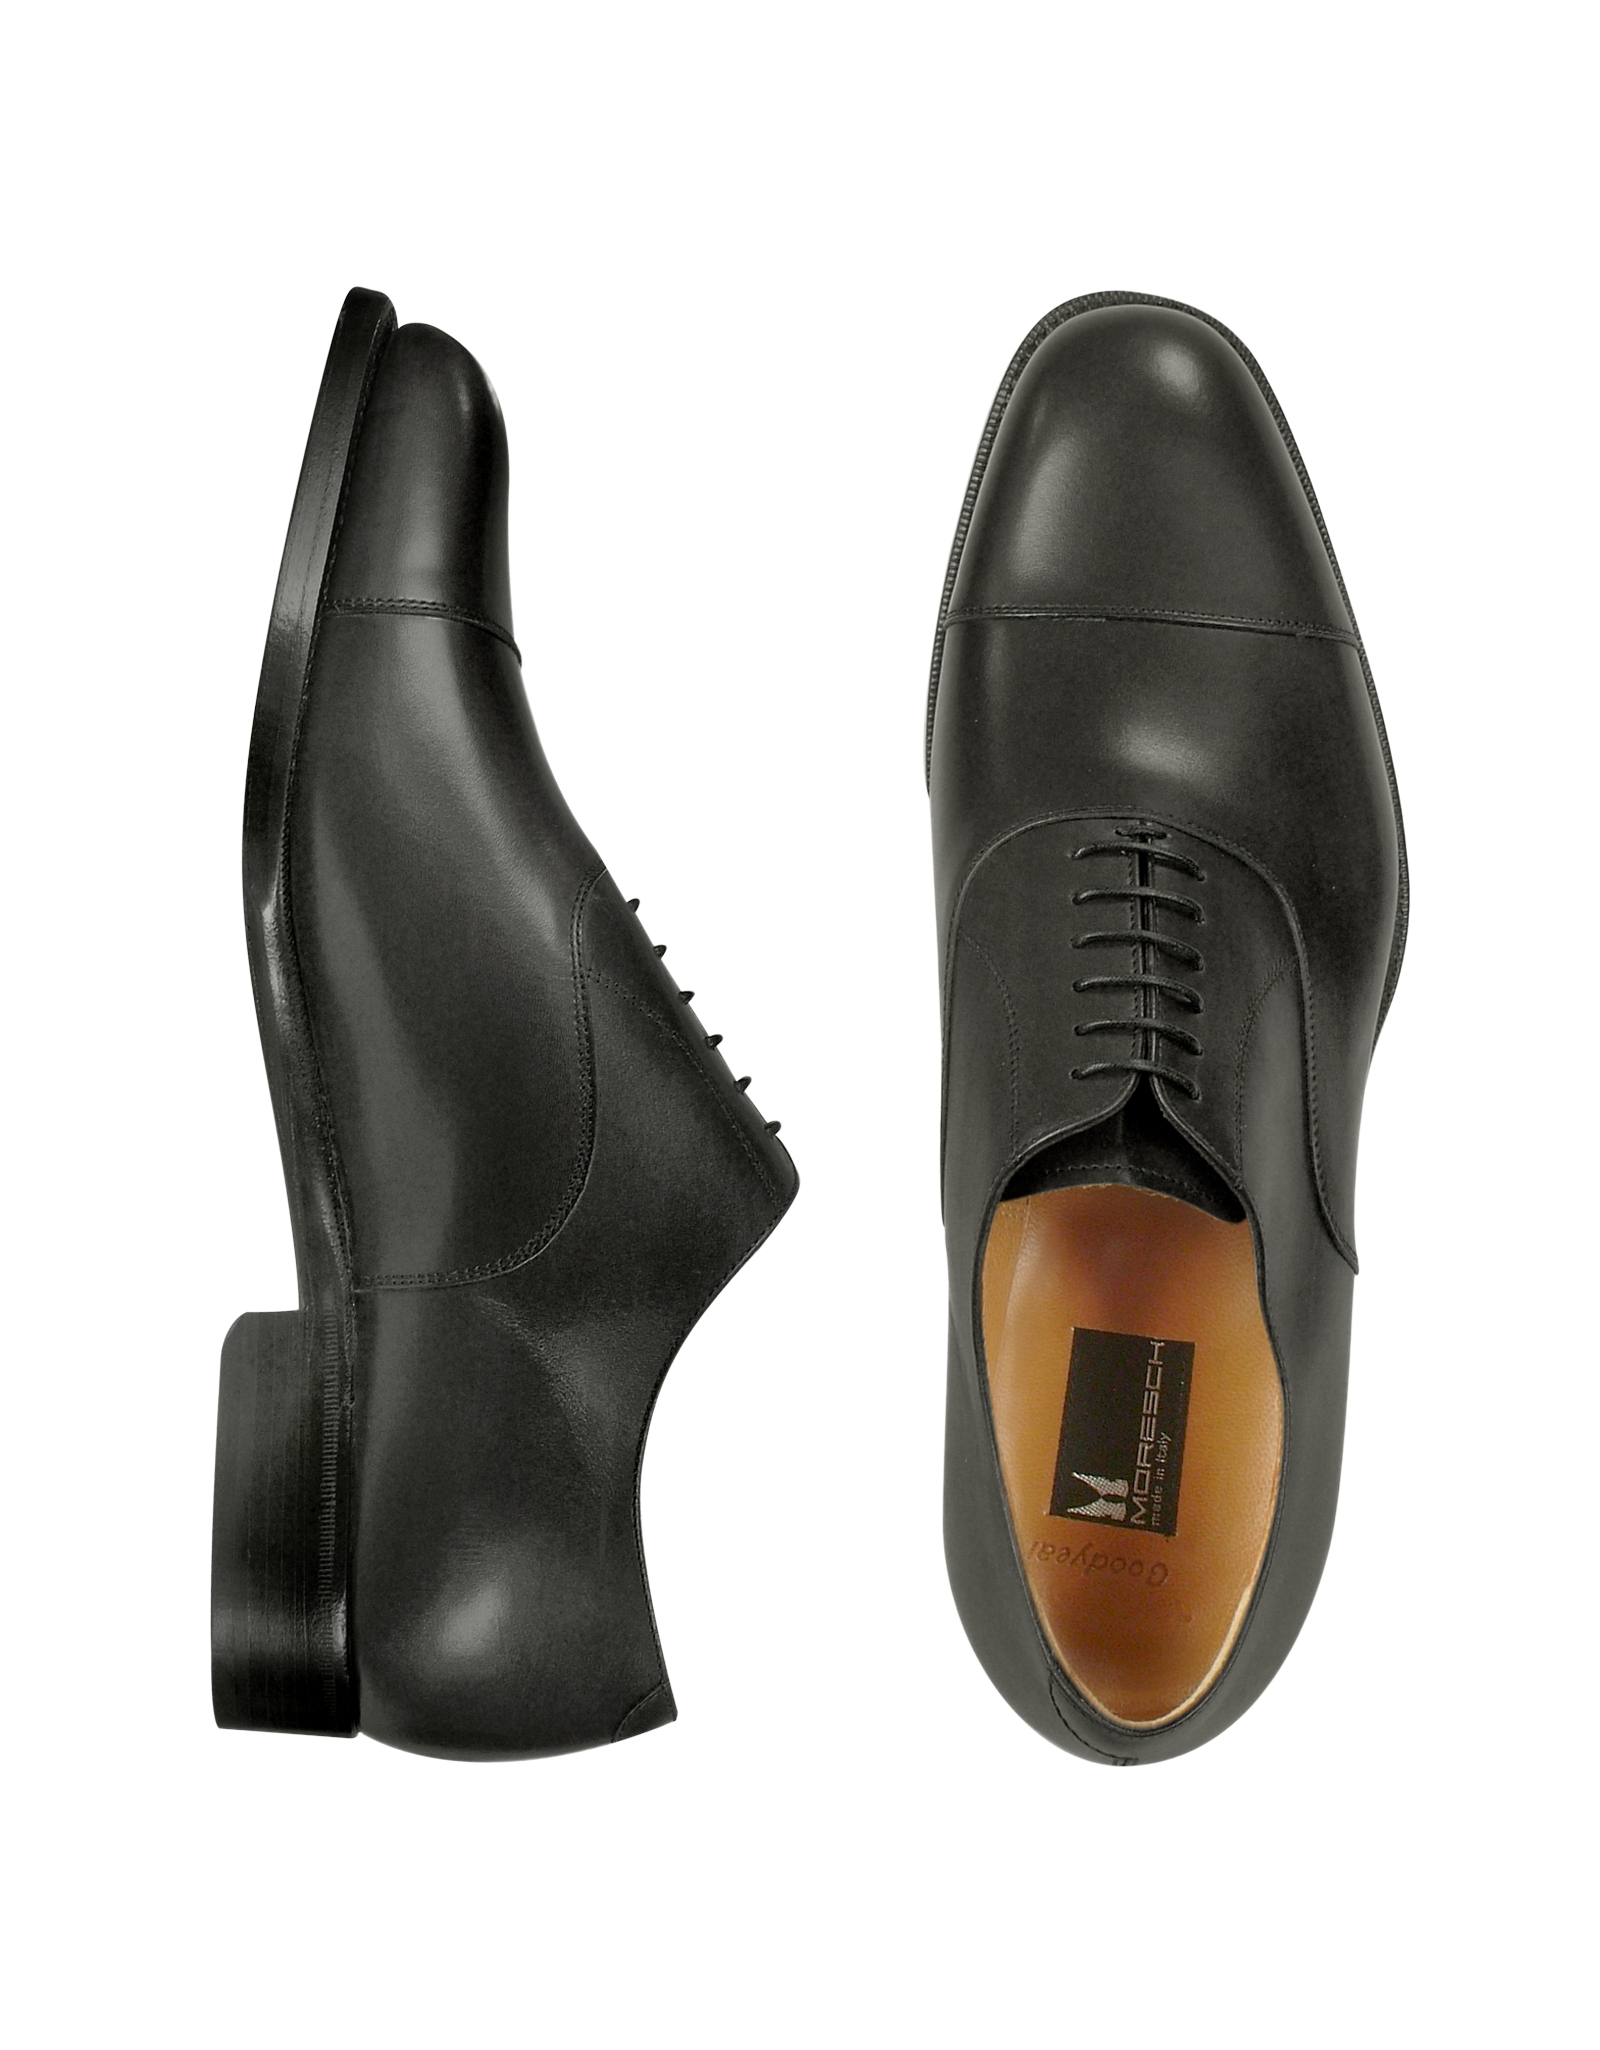 Lyst - Moreschi Londra - Black Calfskin Cap Toe Oxford Shoes in Black ...